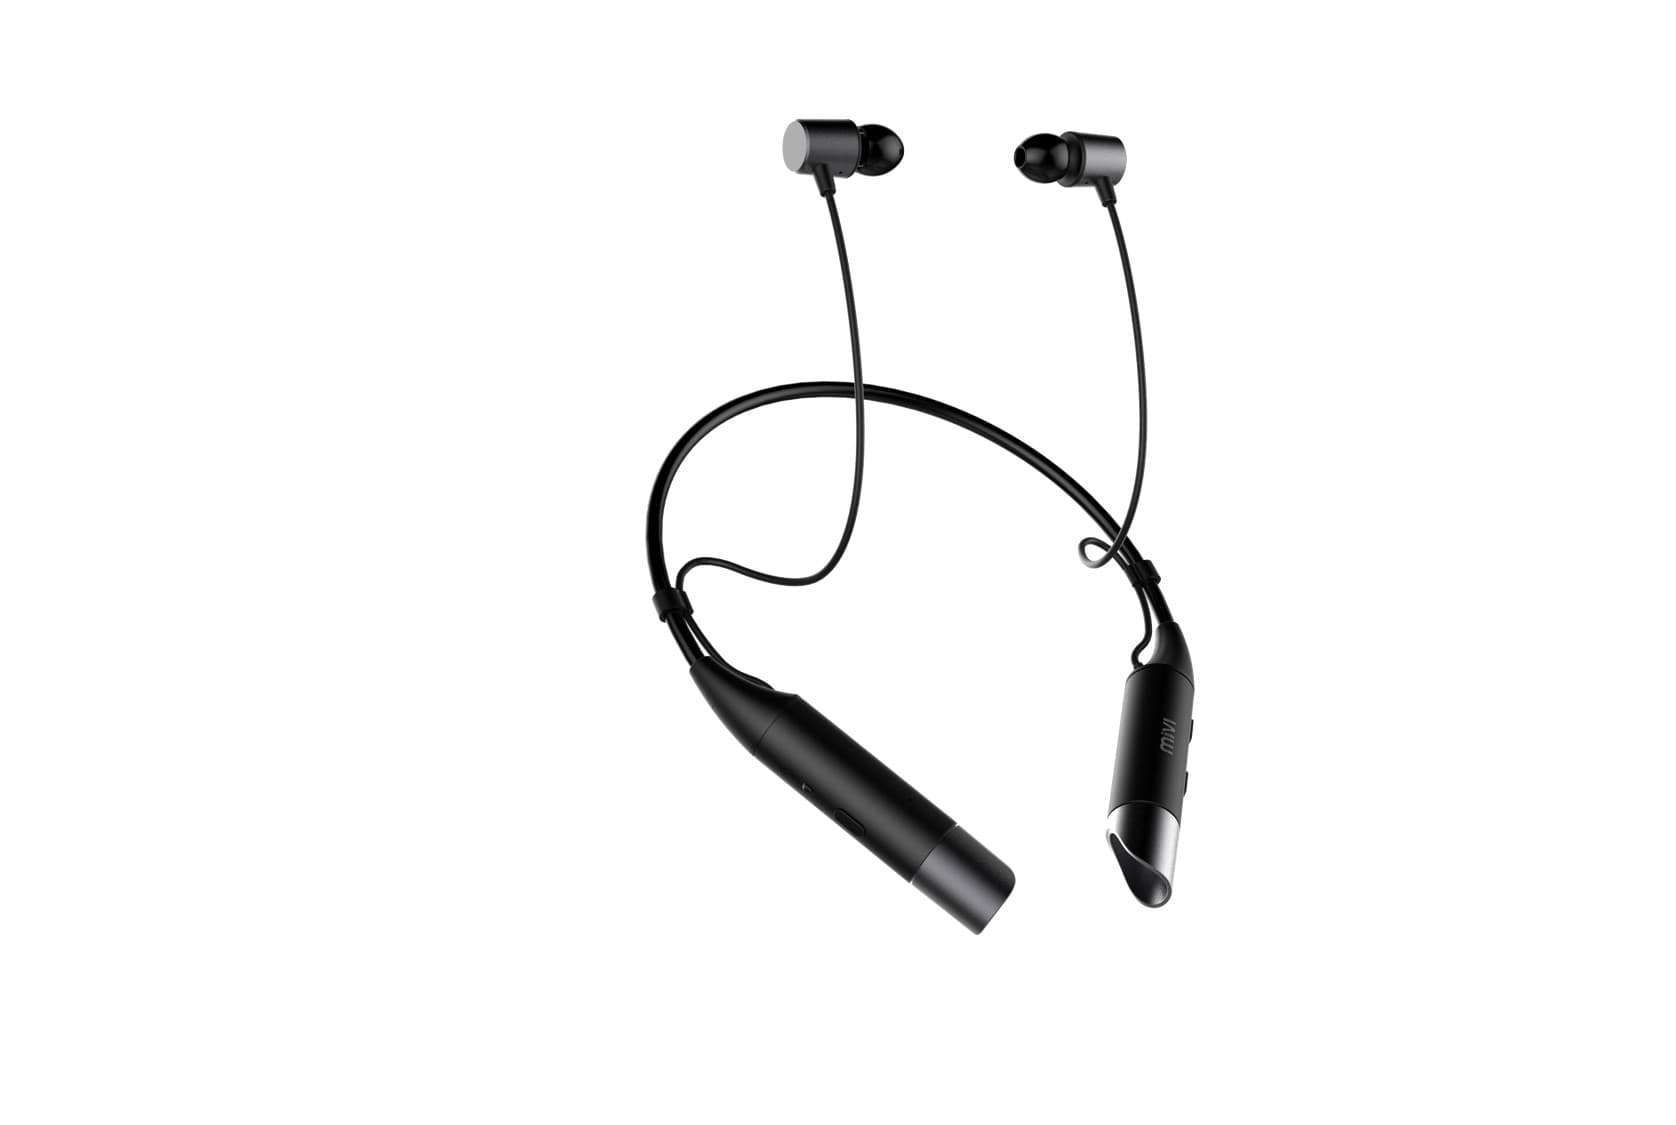 MIVI Collar Wireless Earphones Review 2020